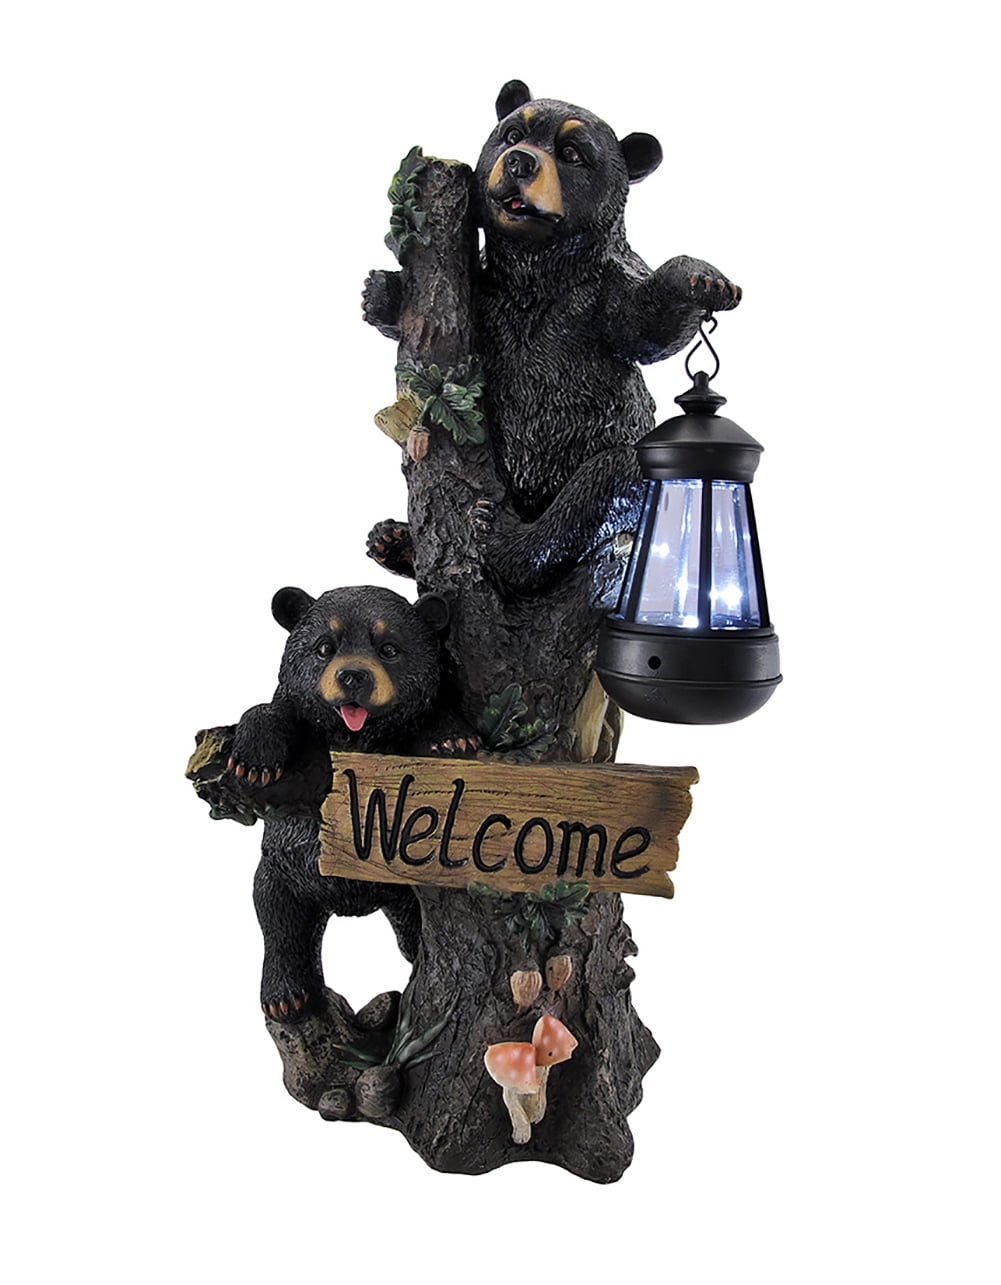 Miniature Dollhouse FAIRY GARDEN Accessories Climbing Bear Cubs 